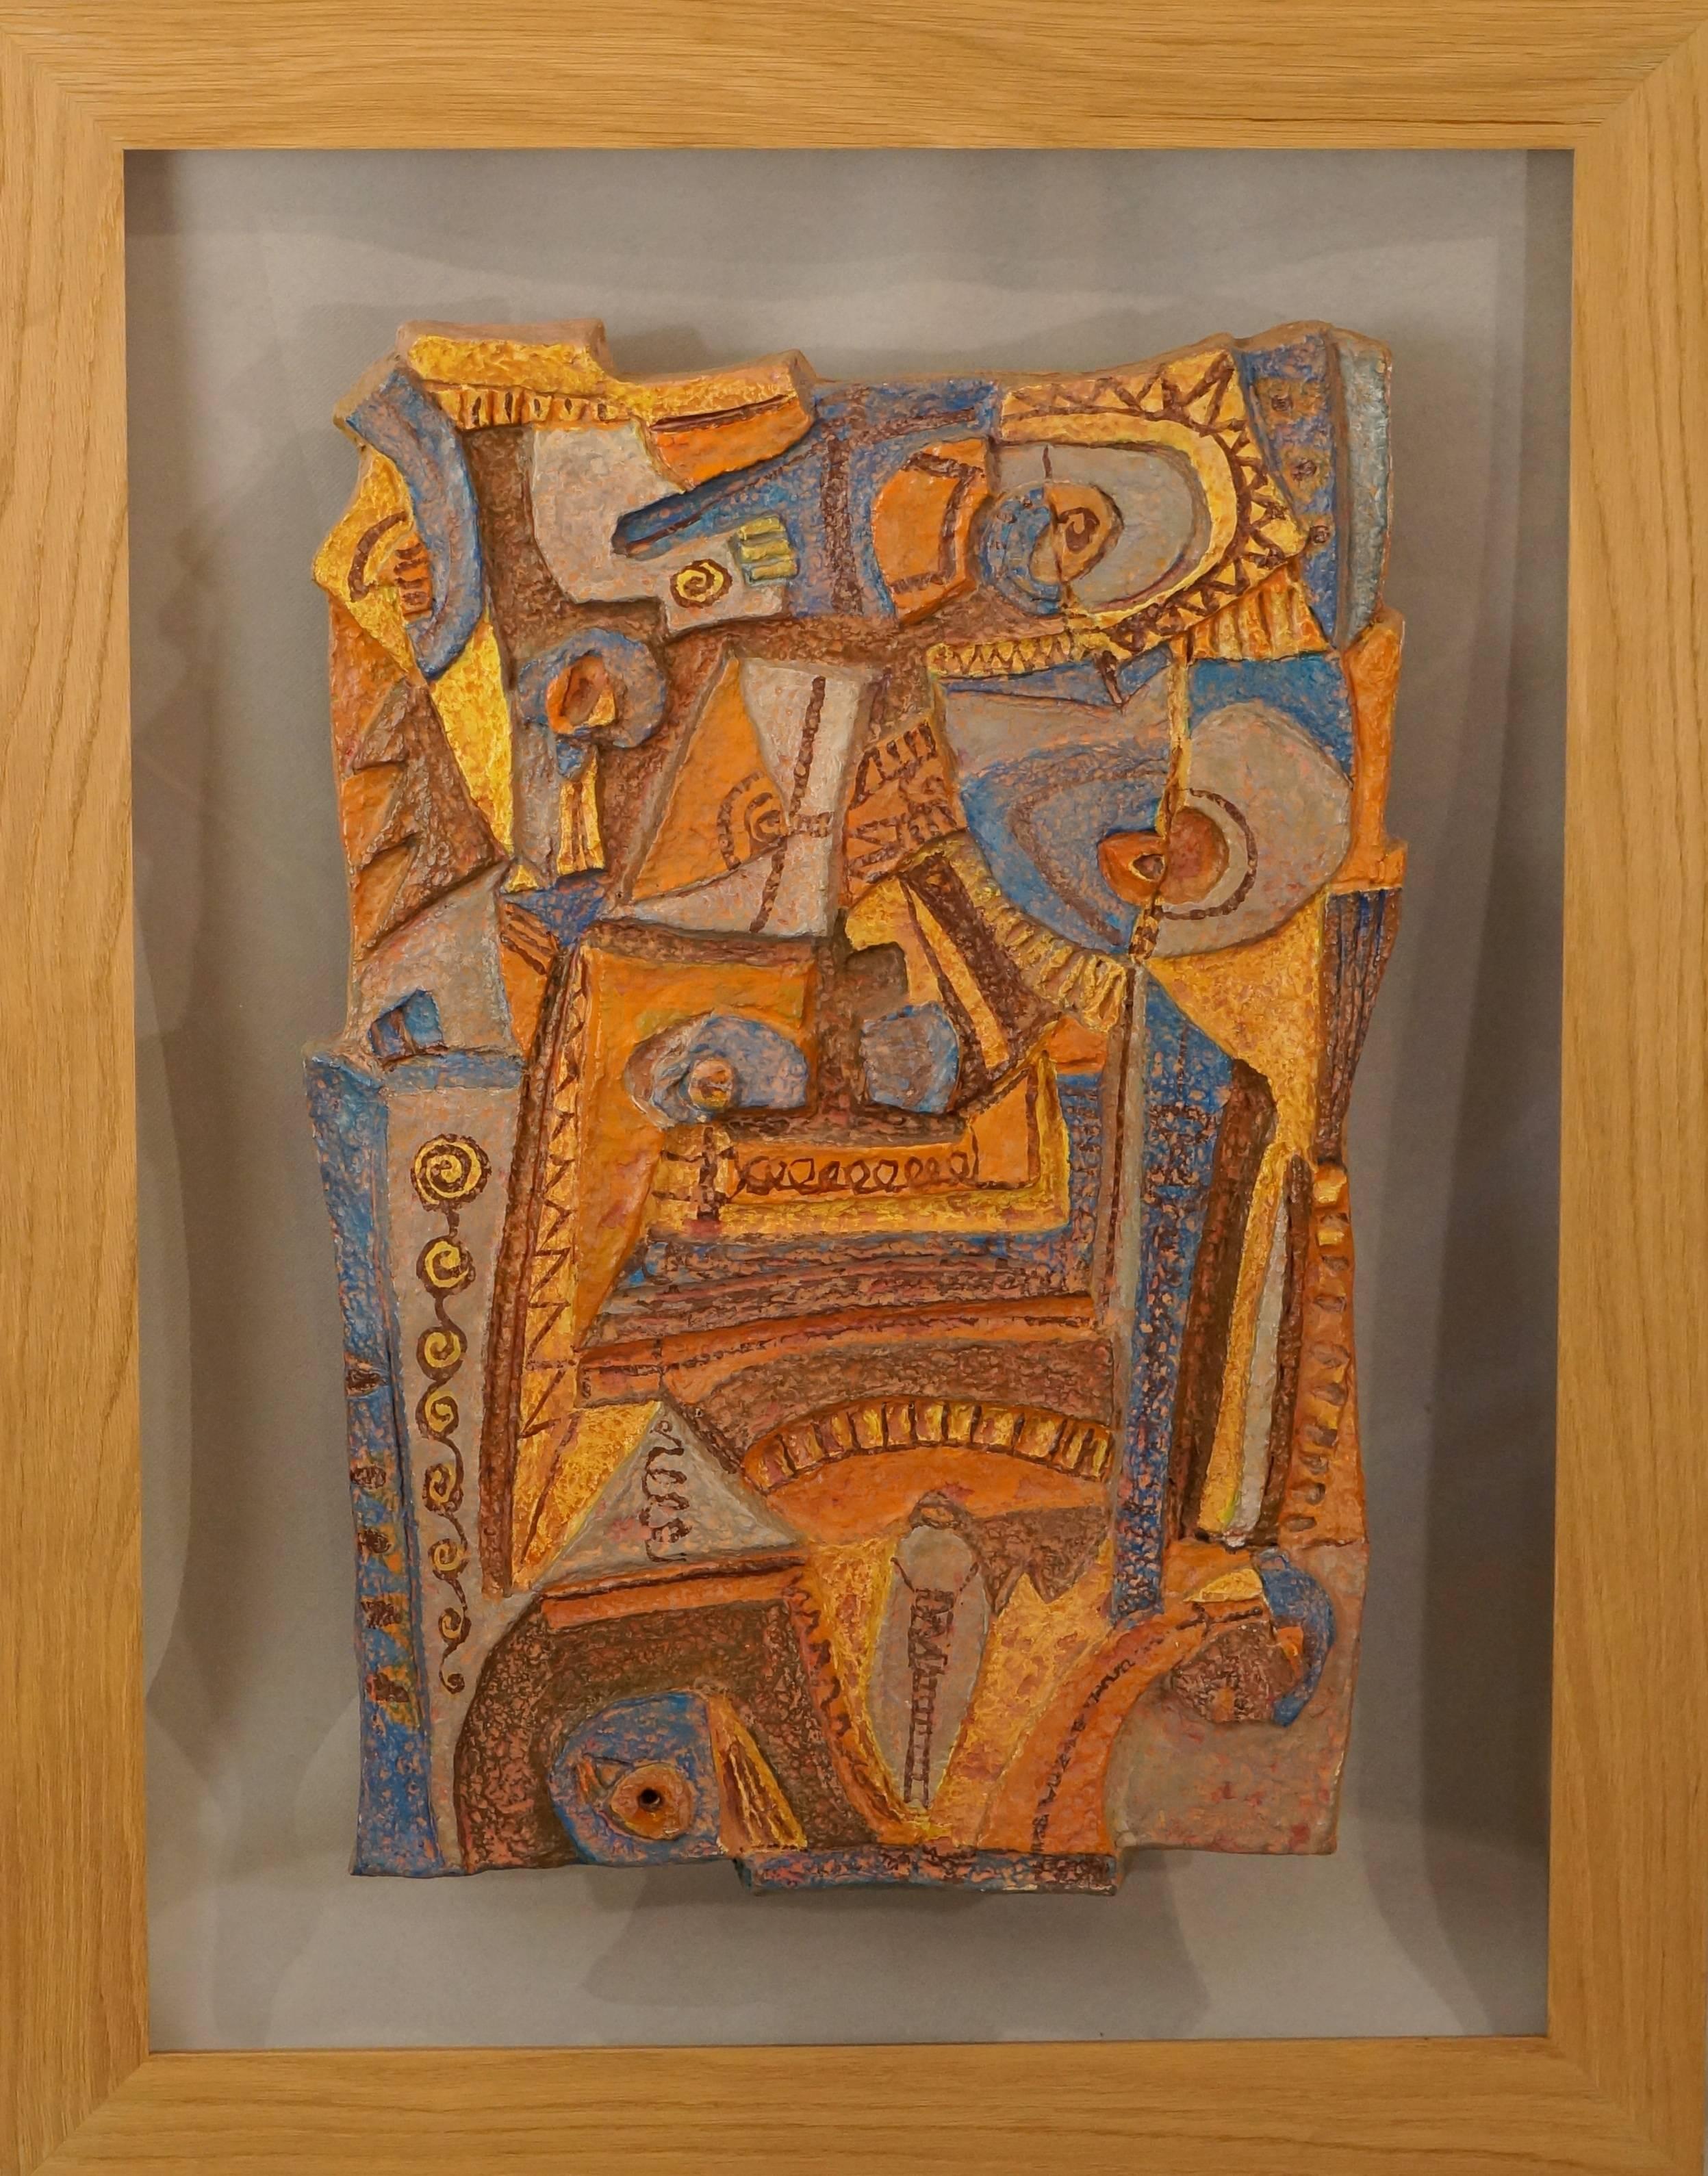 Les Argonautes Abstract Sculpture - Abstract Papier Mache Composition, 1950-60 - papier mache, 83x65x4 cm., framed